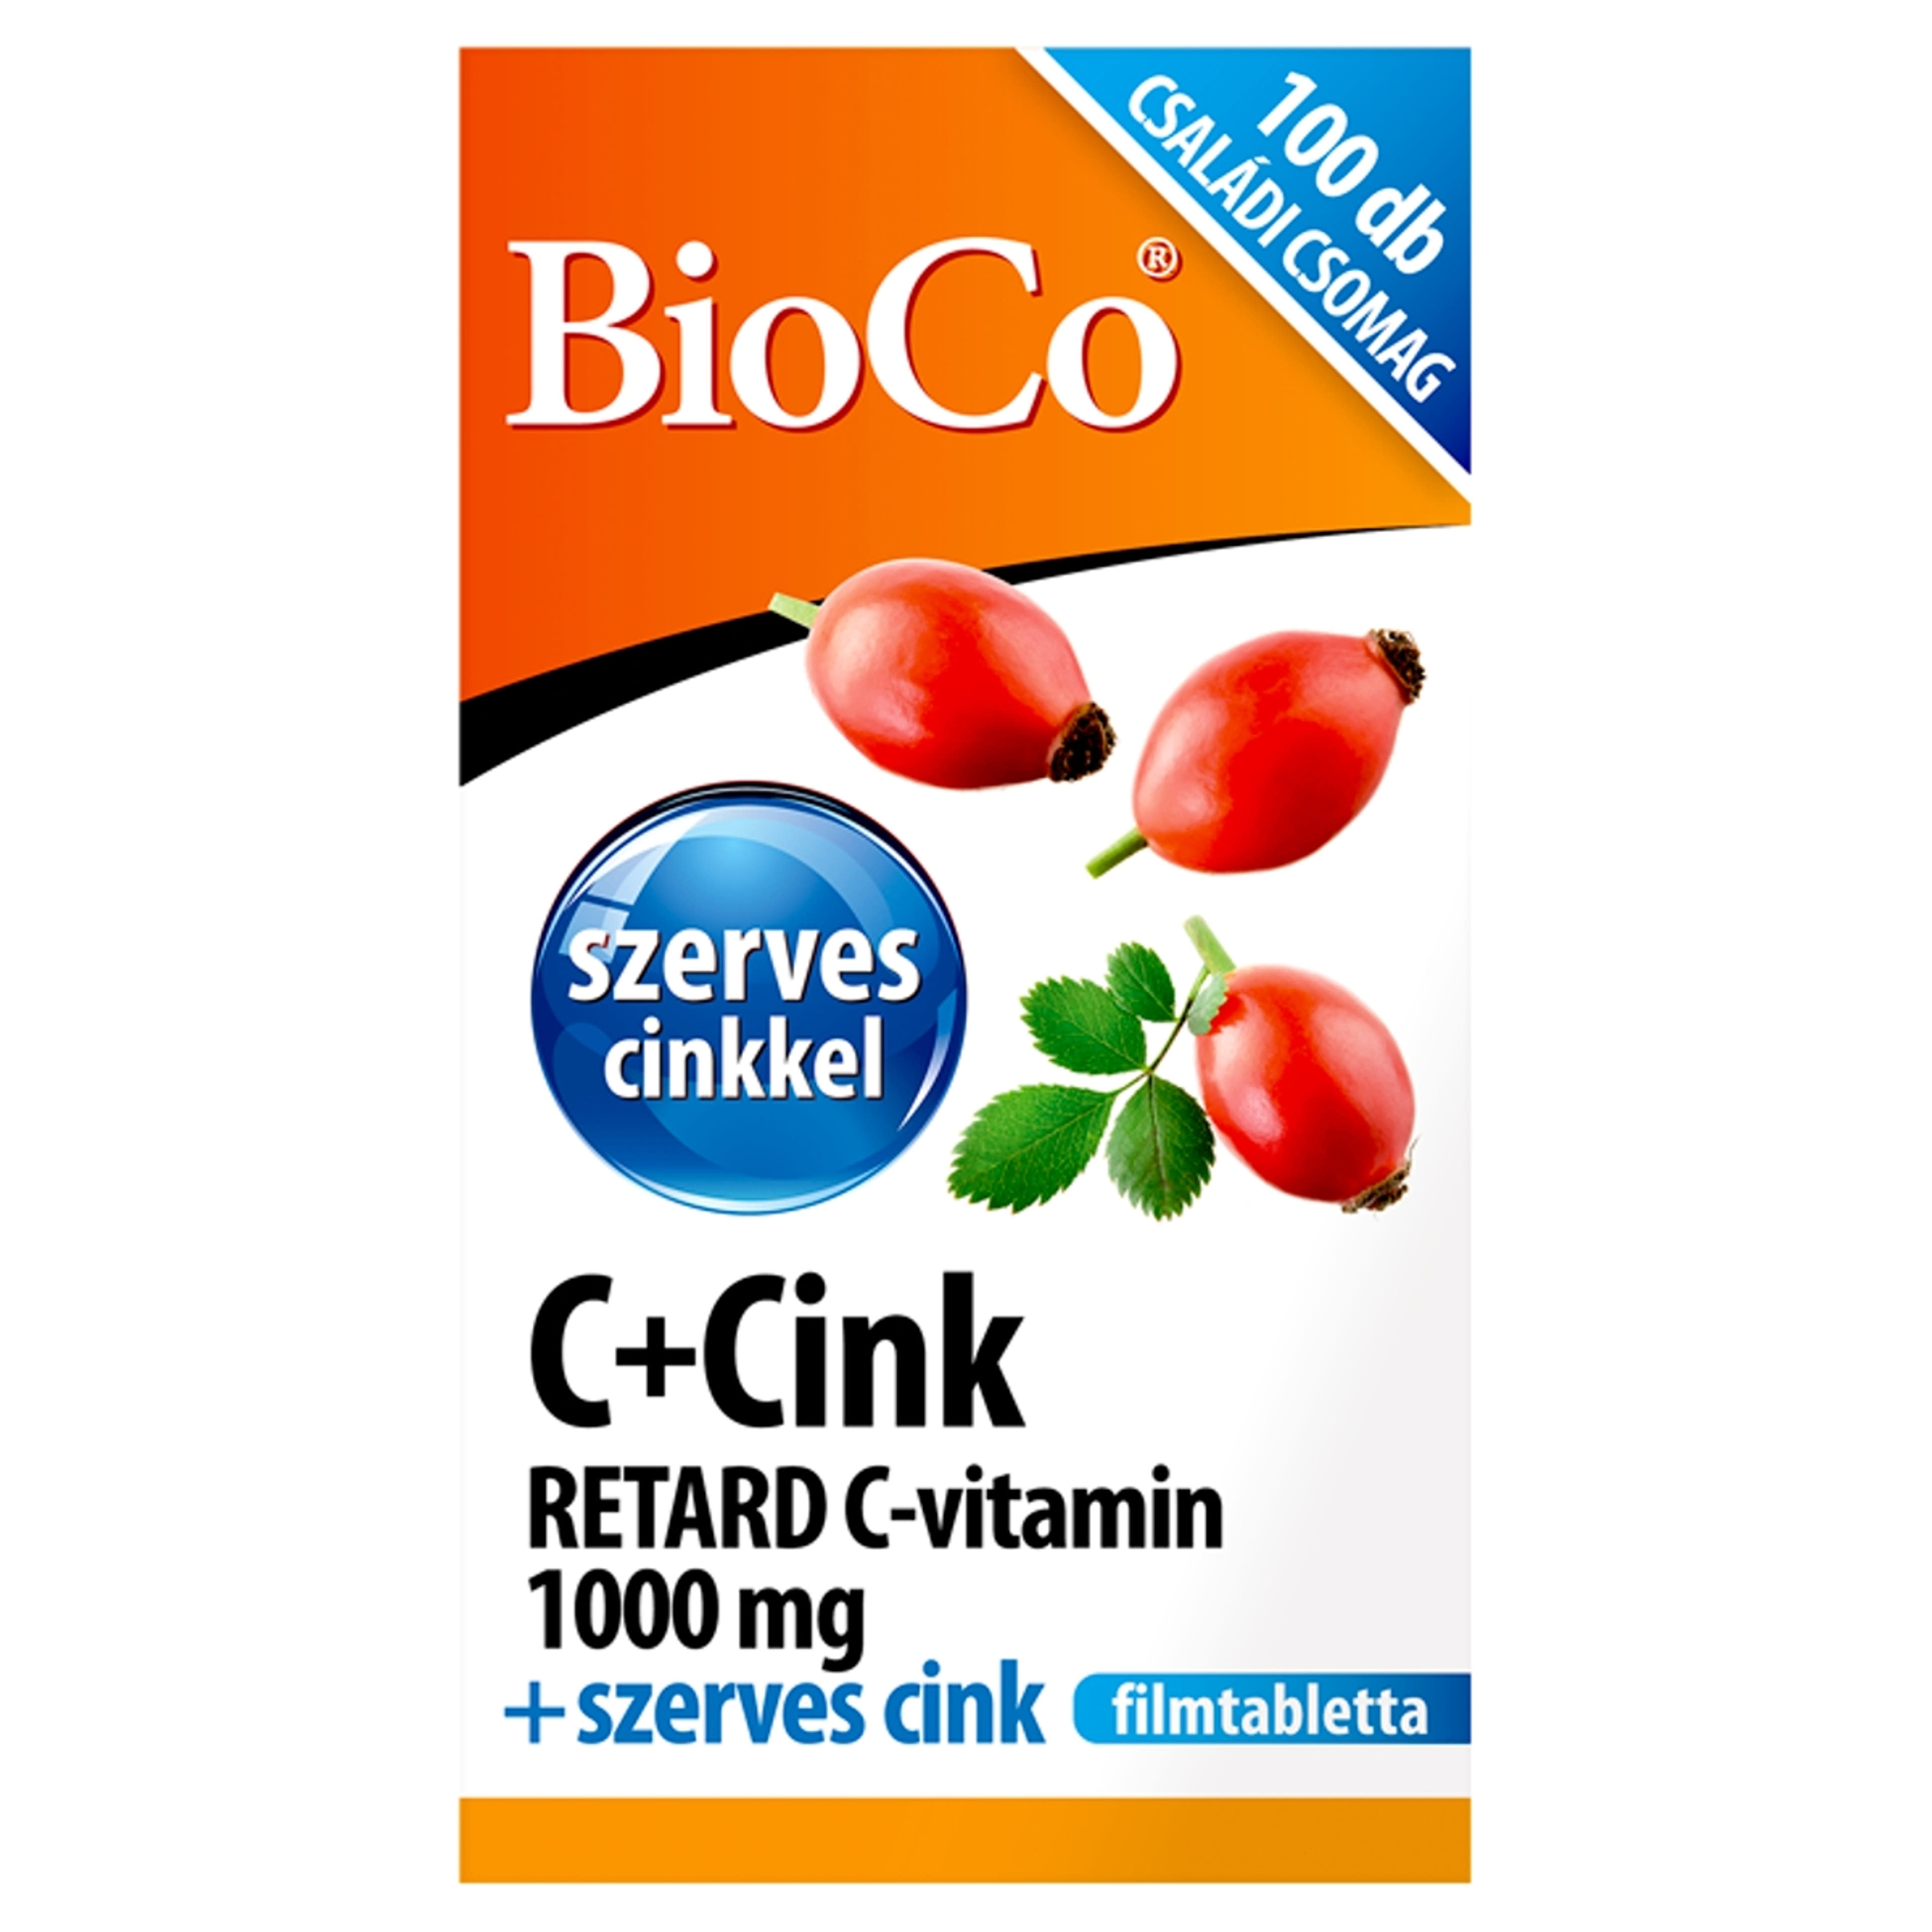 Bioco C+cink retard C-vitamin 1000 mg filmtabletta - 100 db-1